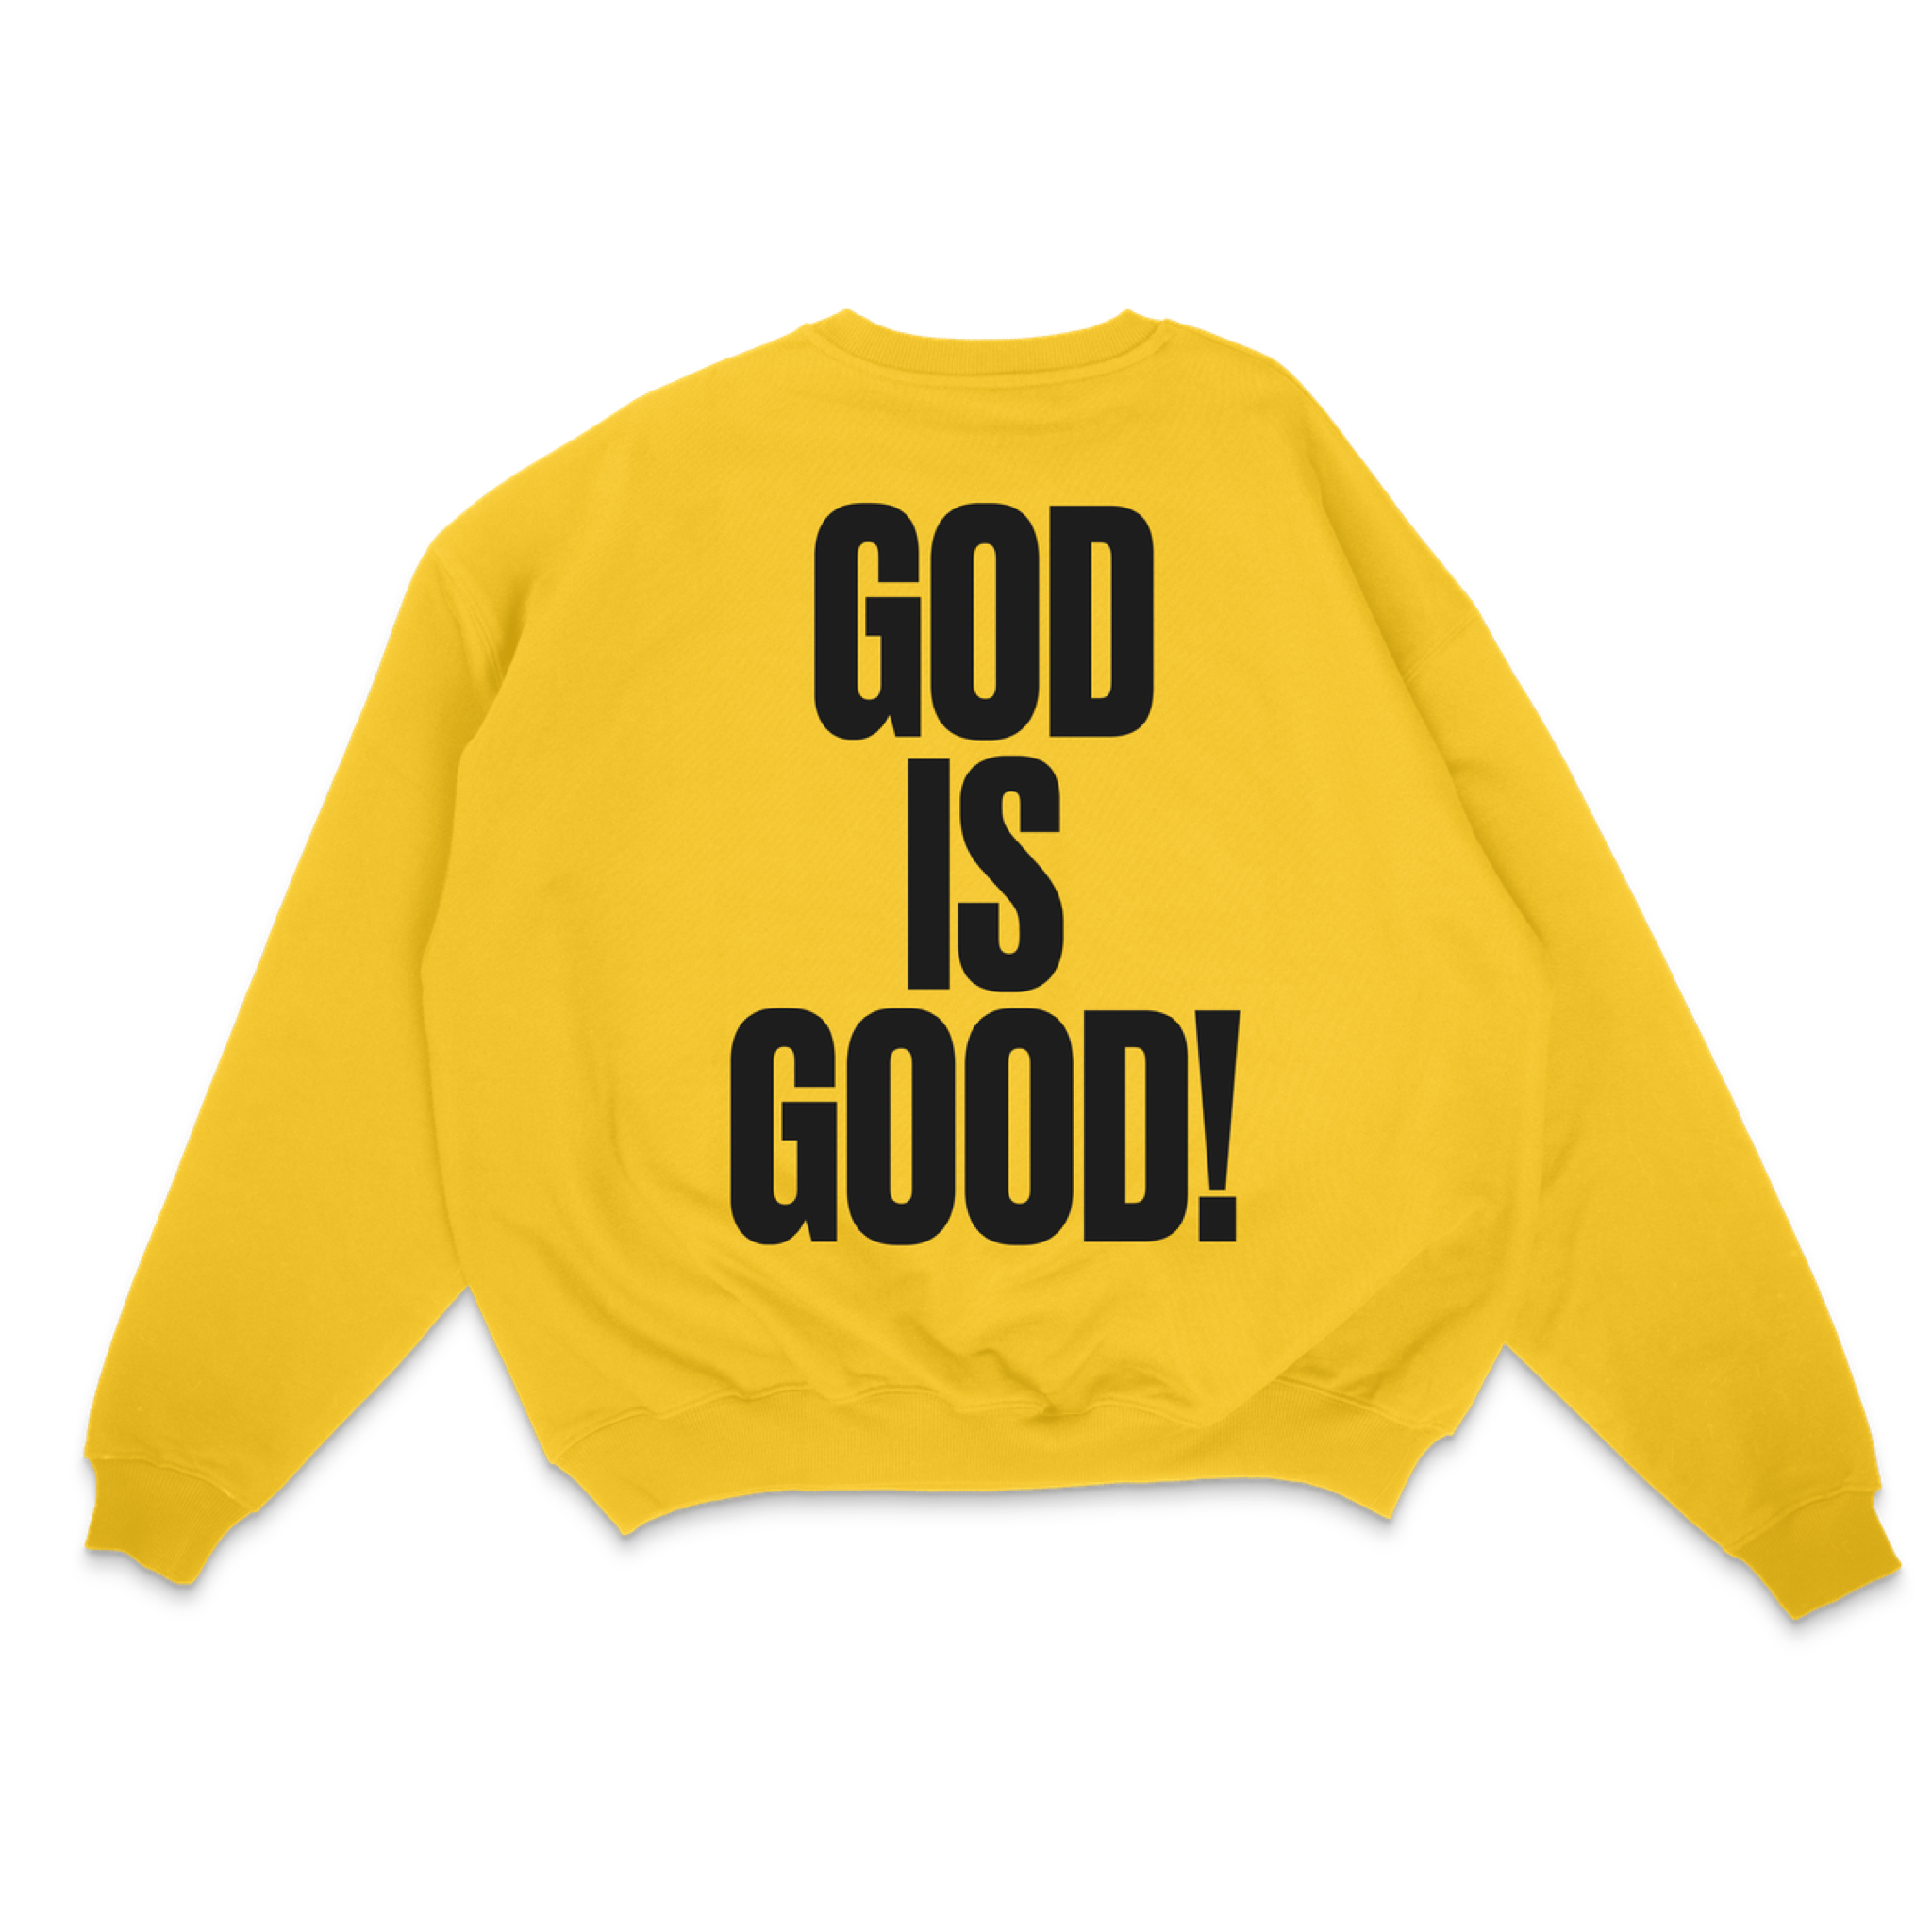 GOD IS GOOD! - UNISEX SWEATSHIRT